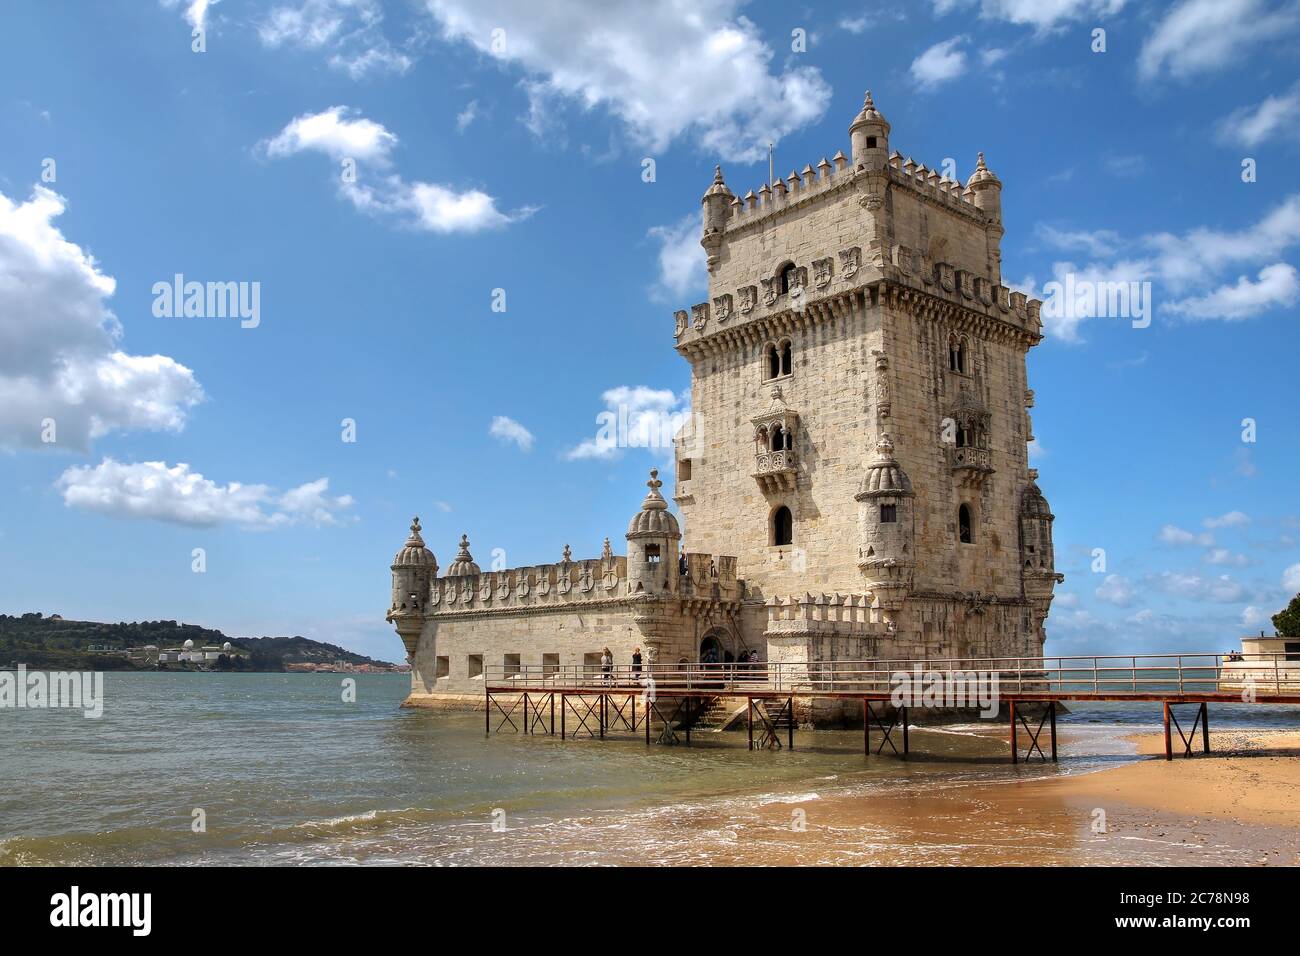 Orgullosa Torre de Belem (Torre Belem) en el río Tajo, que guarda la entrada a Lisboa en Portugal. Esta torre es una de las más famosas y fácilmente reco Foto de stock